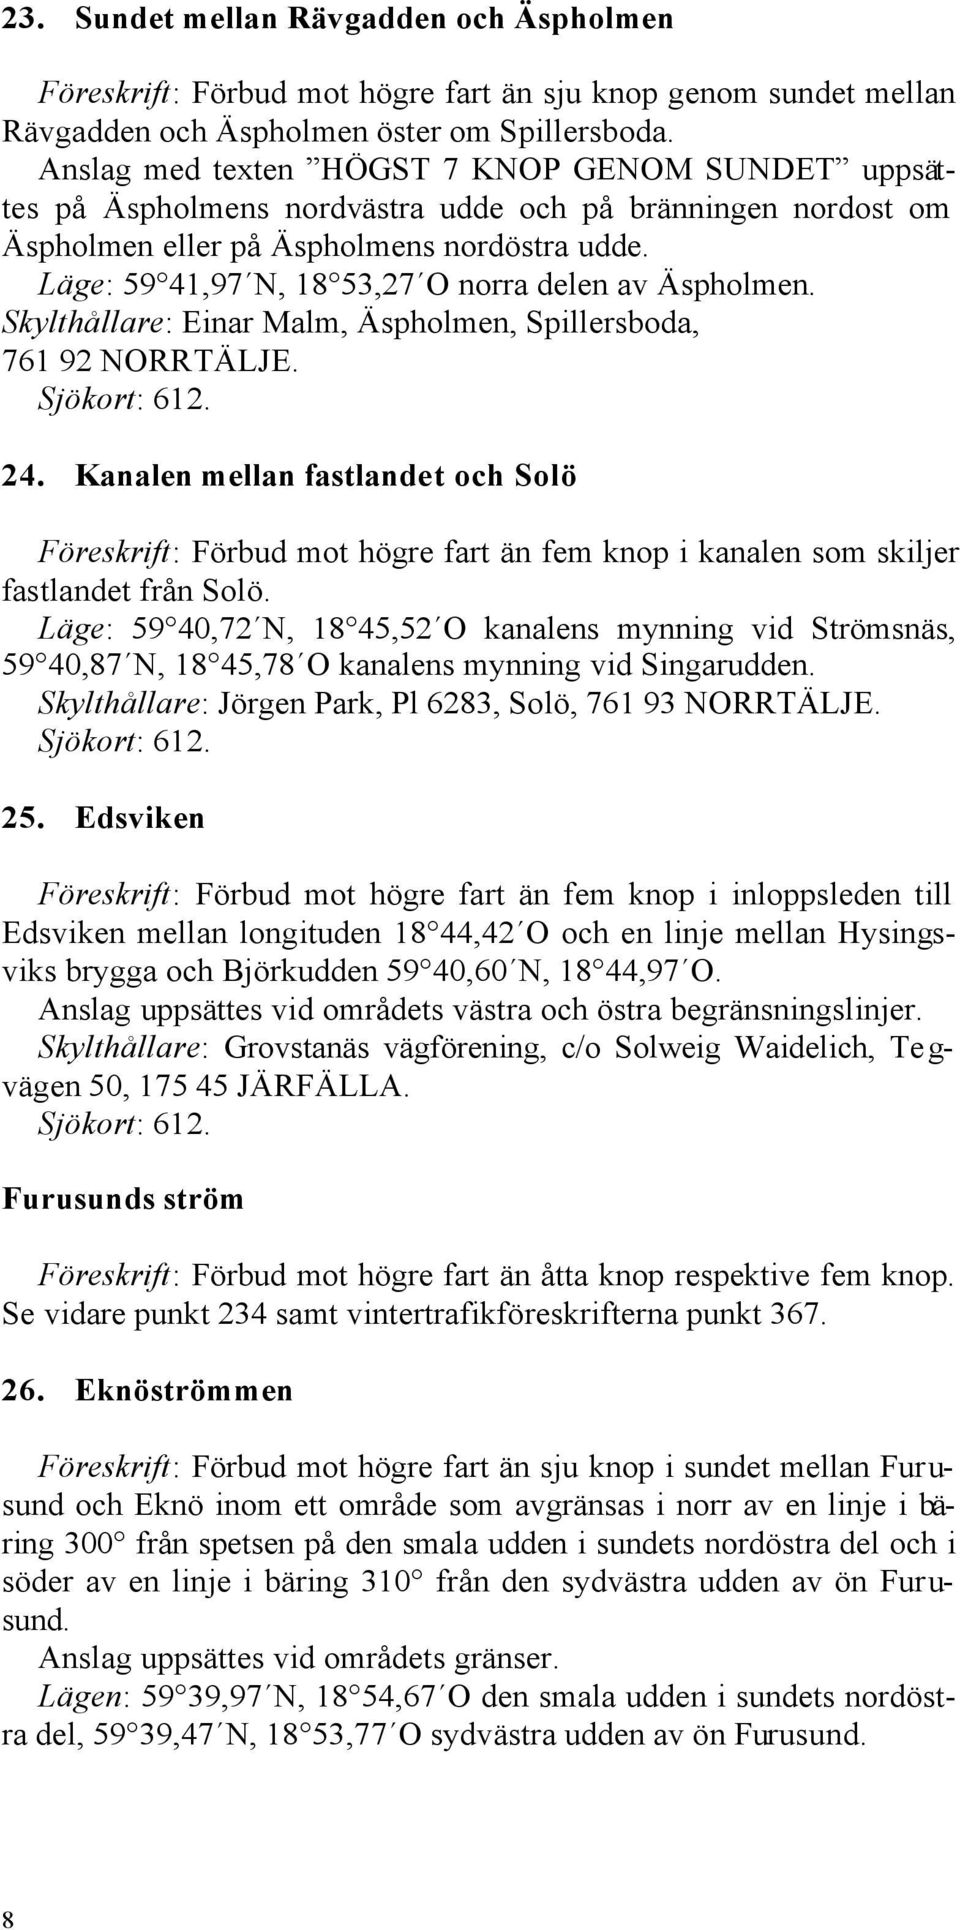 Läge: 59 41,97 N, 18 53,27 O norra delen av Äspholmen. Skylthållare: Einar Malm, Äspholmen, Spillersboda, 761 92 NORRTÄLJE. Sjökort: 612. 24.